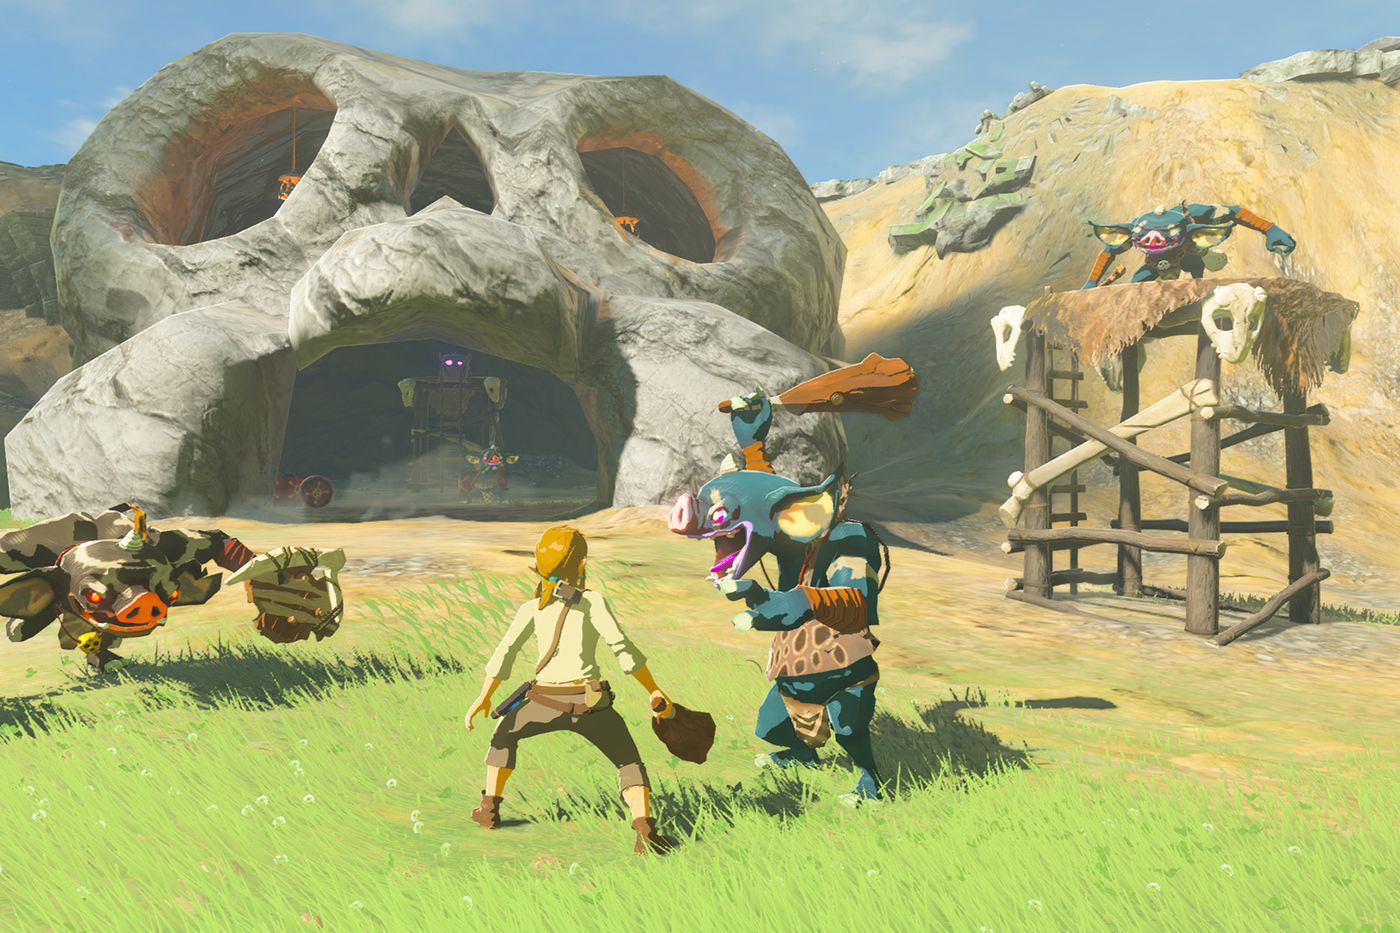 Legend of Zelda launched